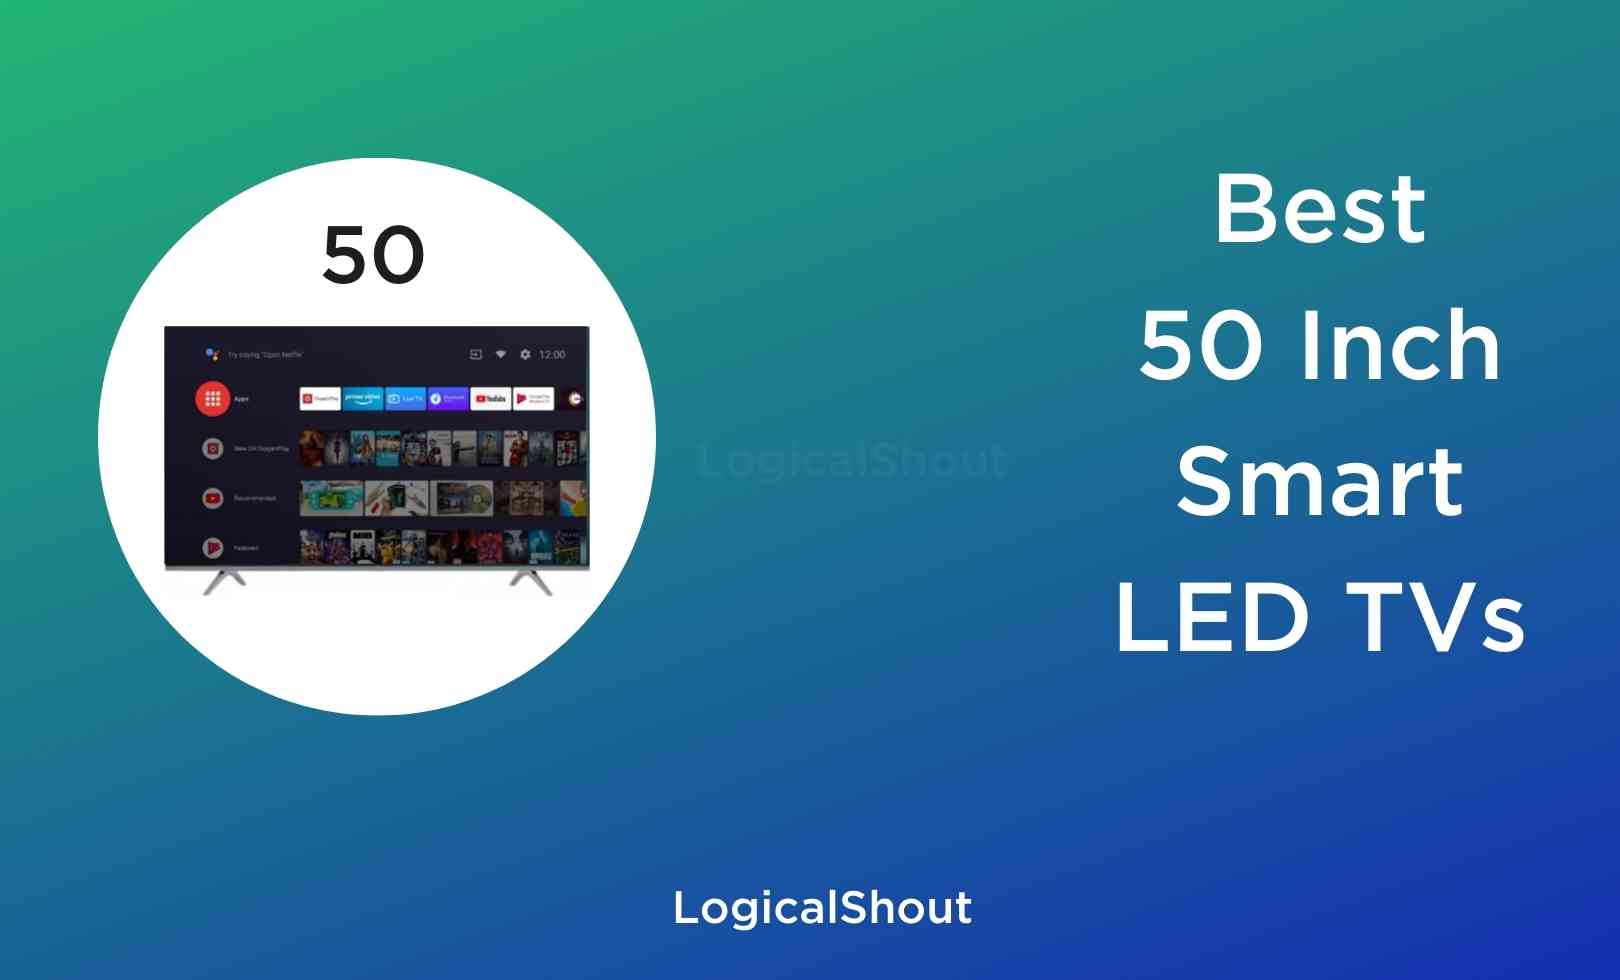 Best 50 inch Smart TVs